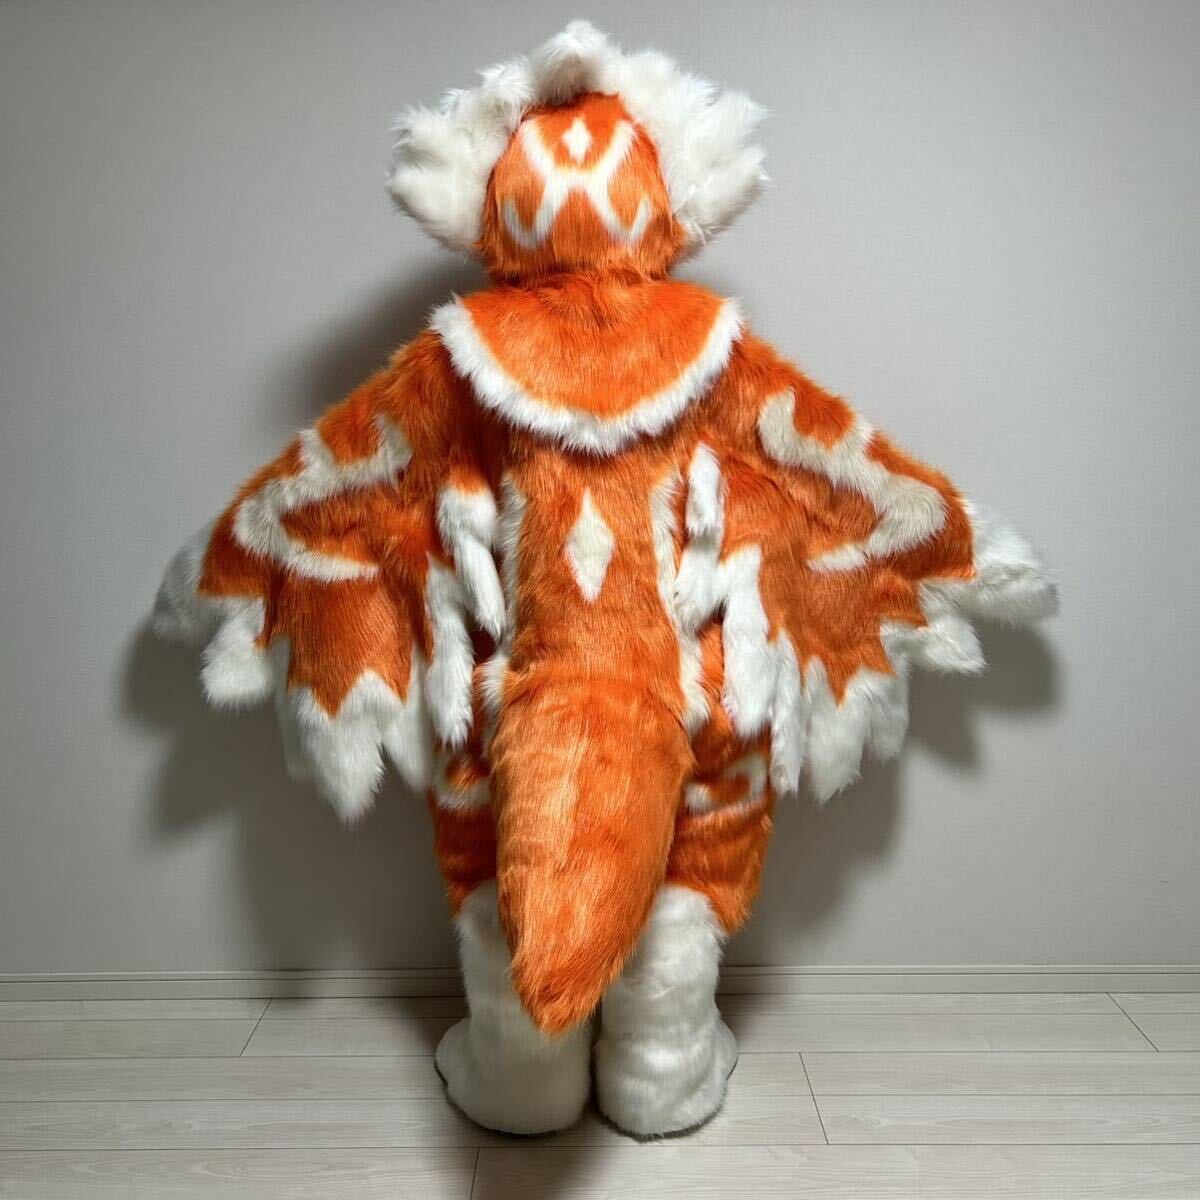 1 иен старт!ke моно костюм мульт-героя птица fursuit полный костюм костюмированная игра мех костюм kigurumia тигр k